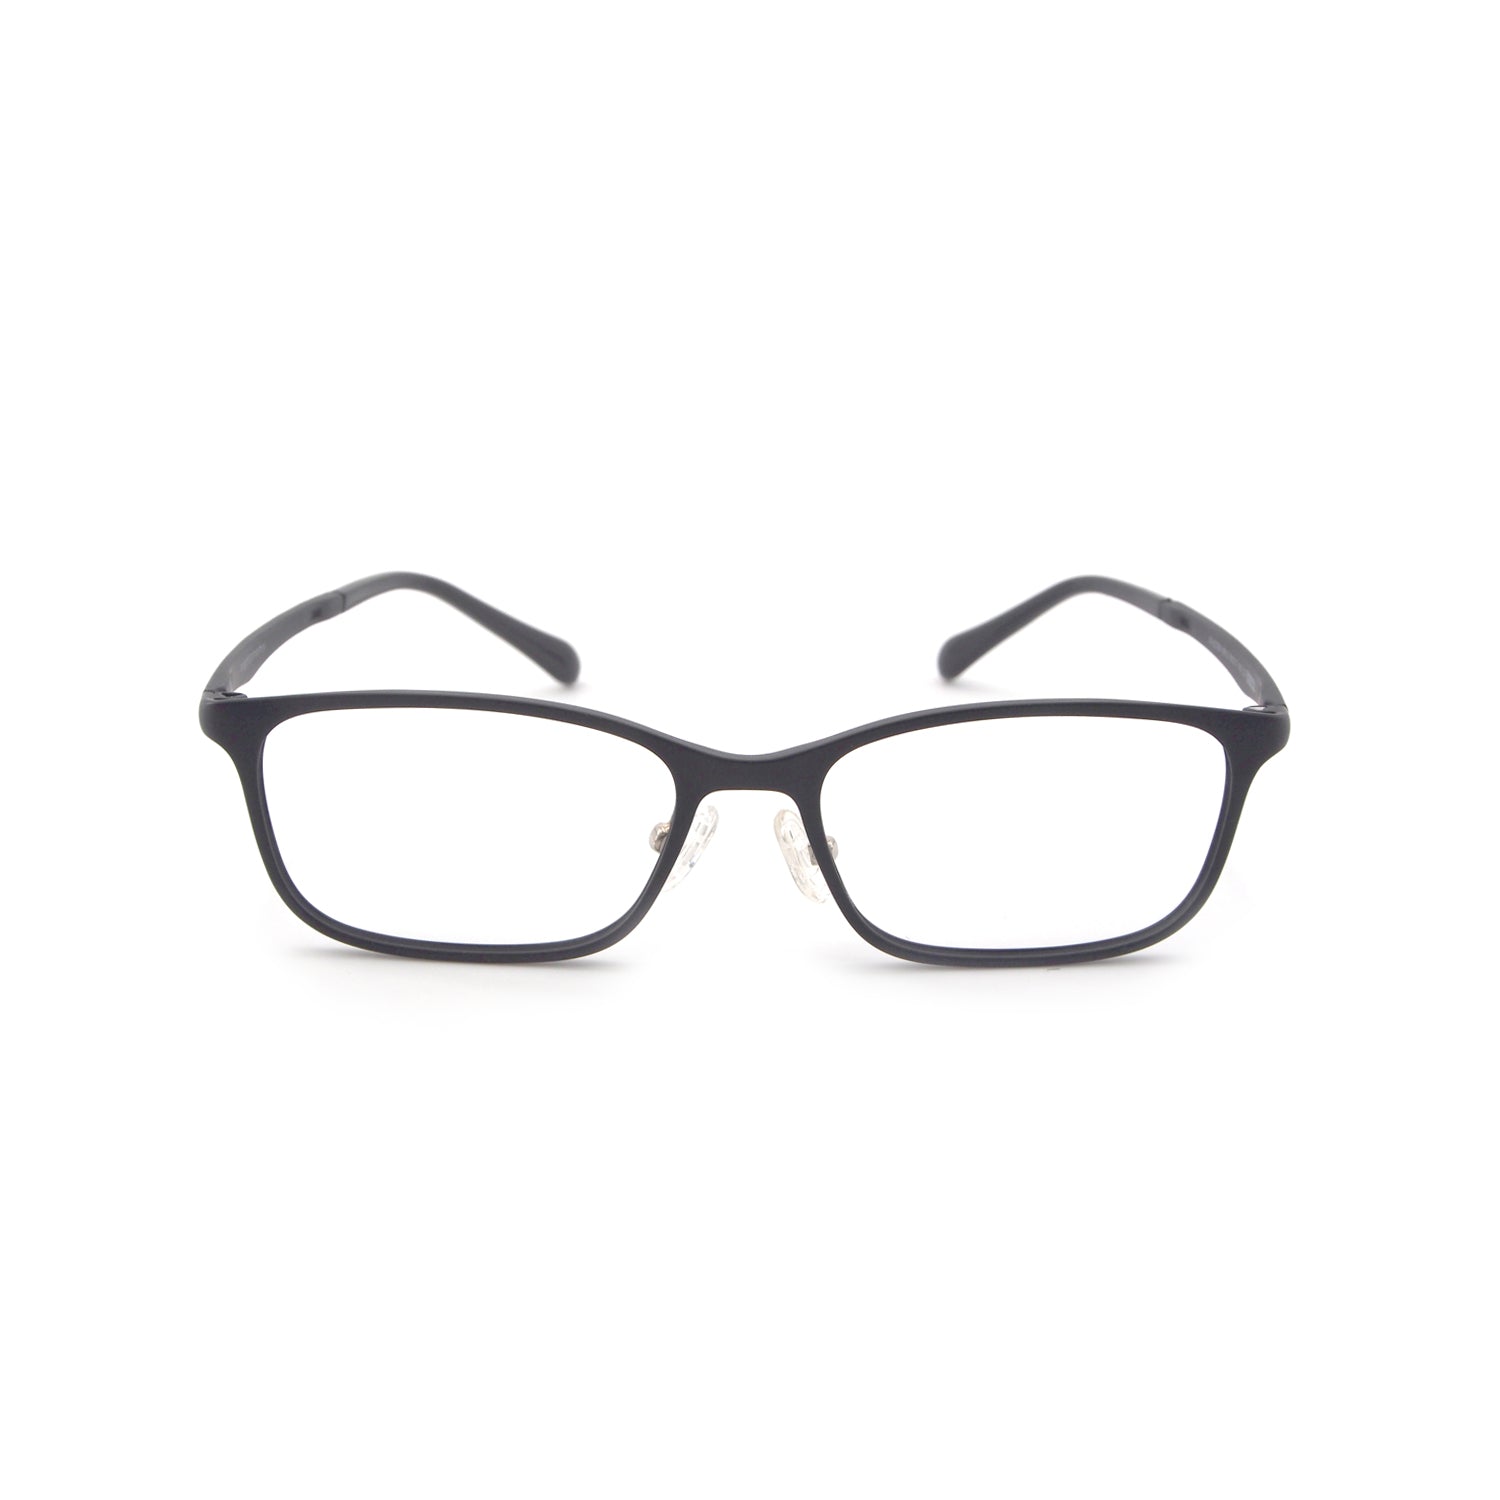 Zephyr in Jet Black Eyeglasses - sightonomy